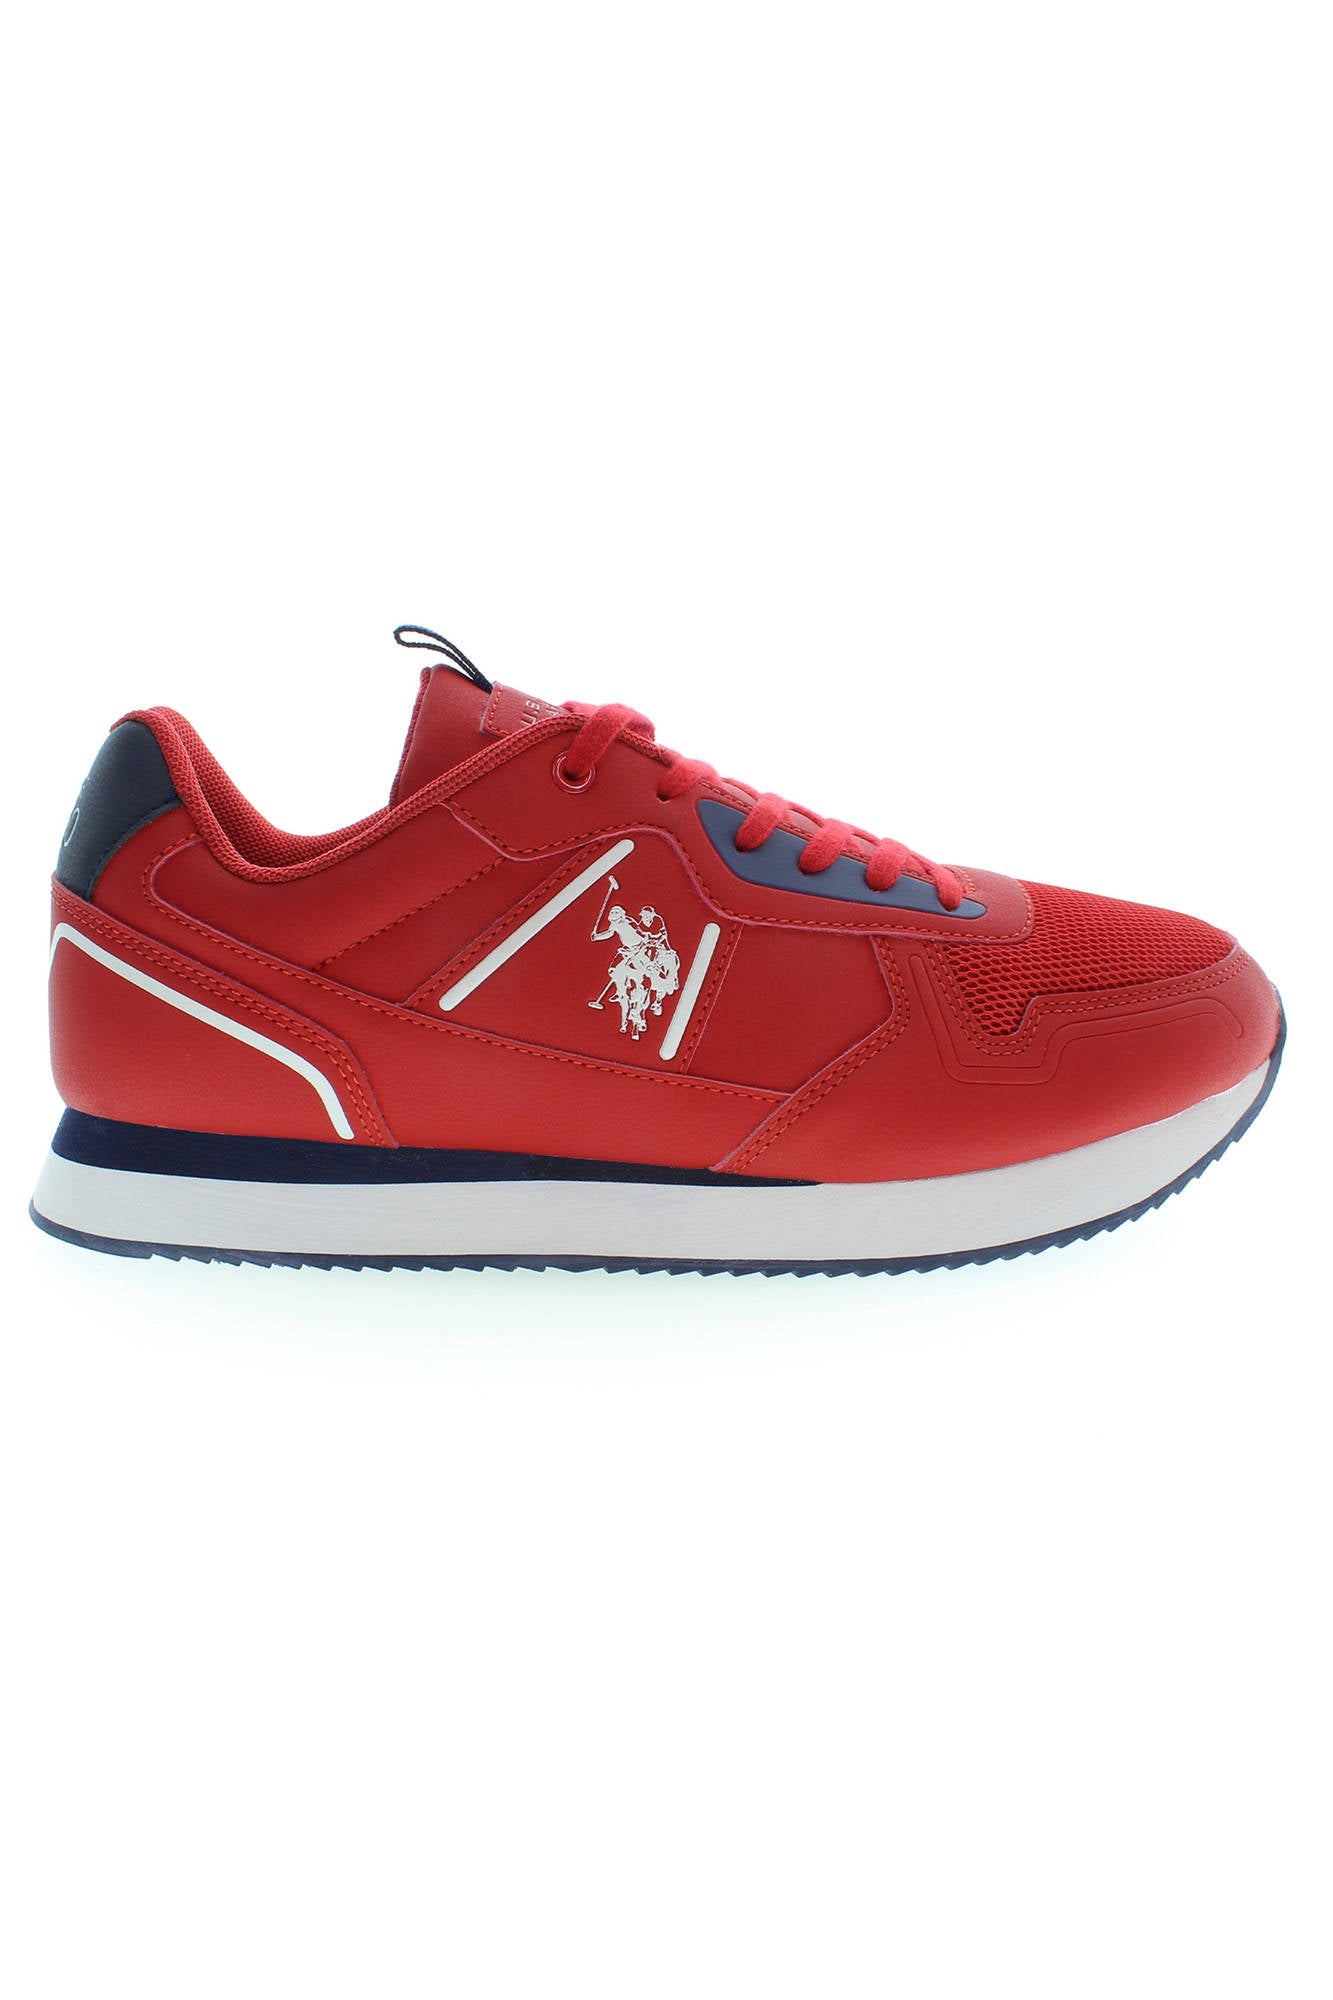 U.S. POLO ASSN. Red Polyester Sneaker$1 - Fizigo